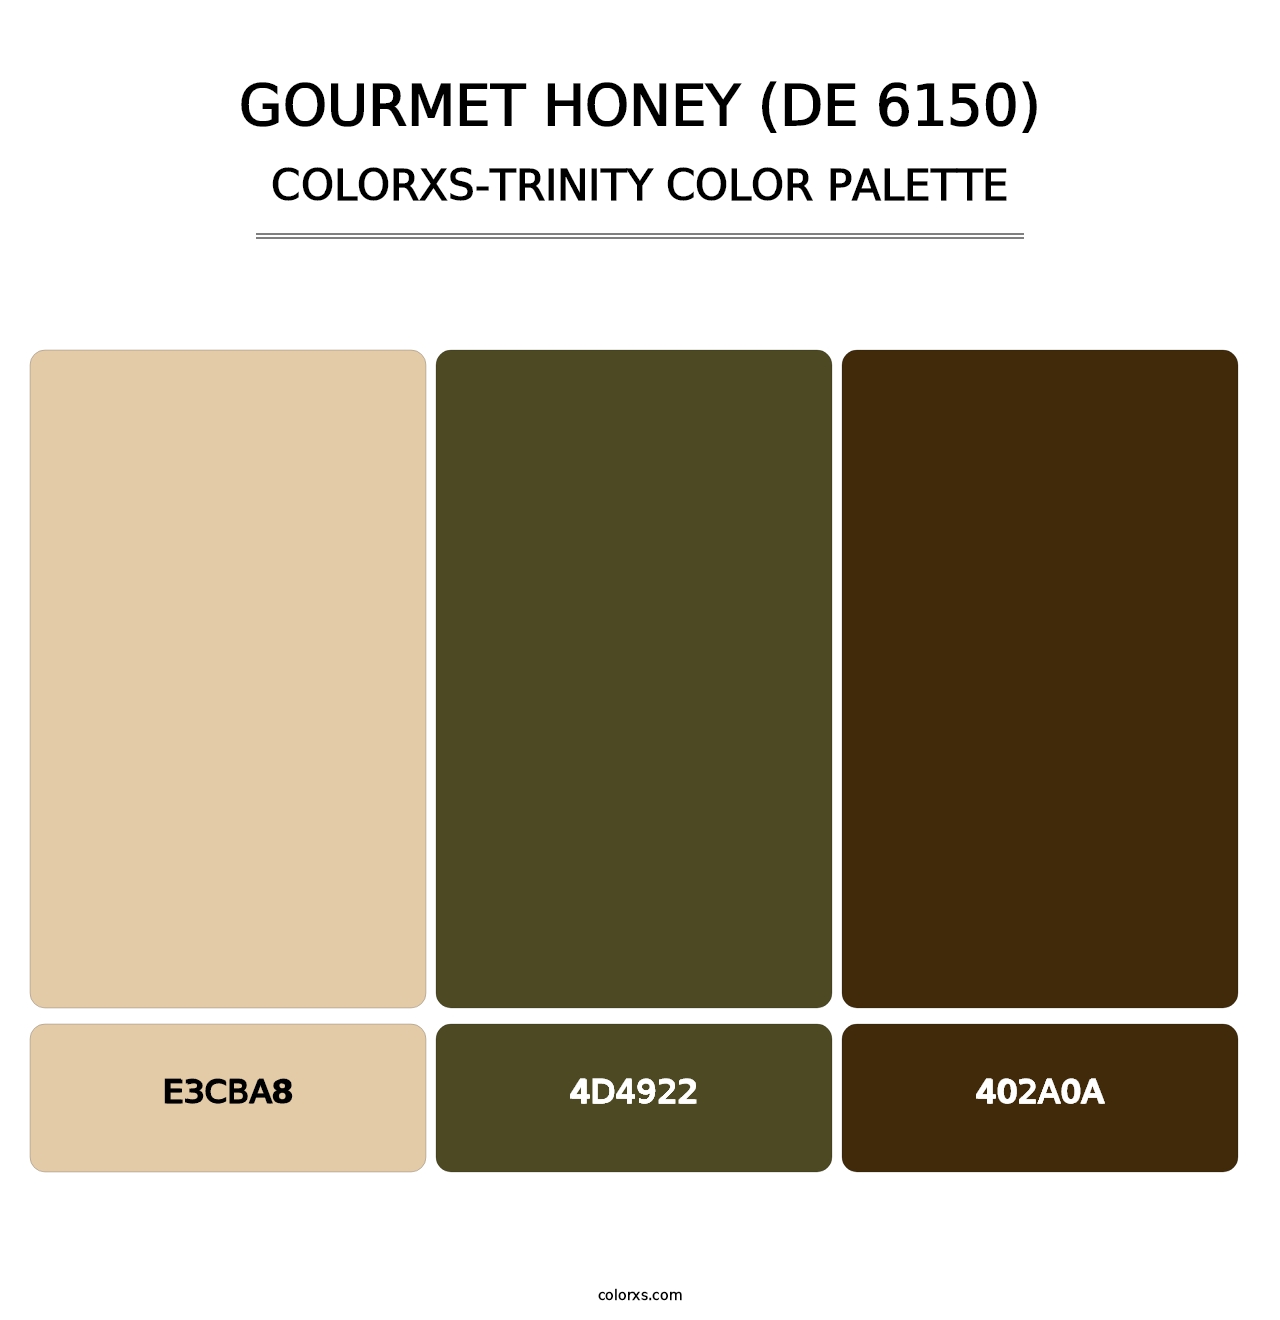 Gourmet Honey (DE 6150) - Colorxs Trinity Palette